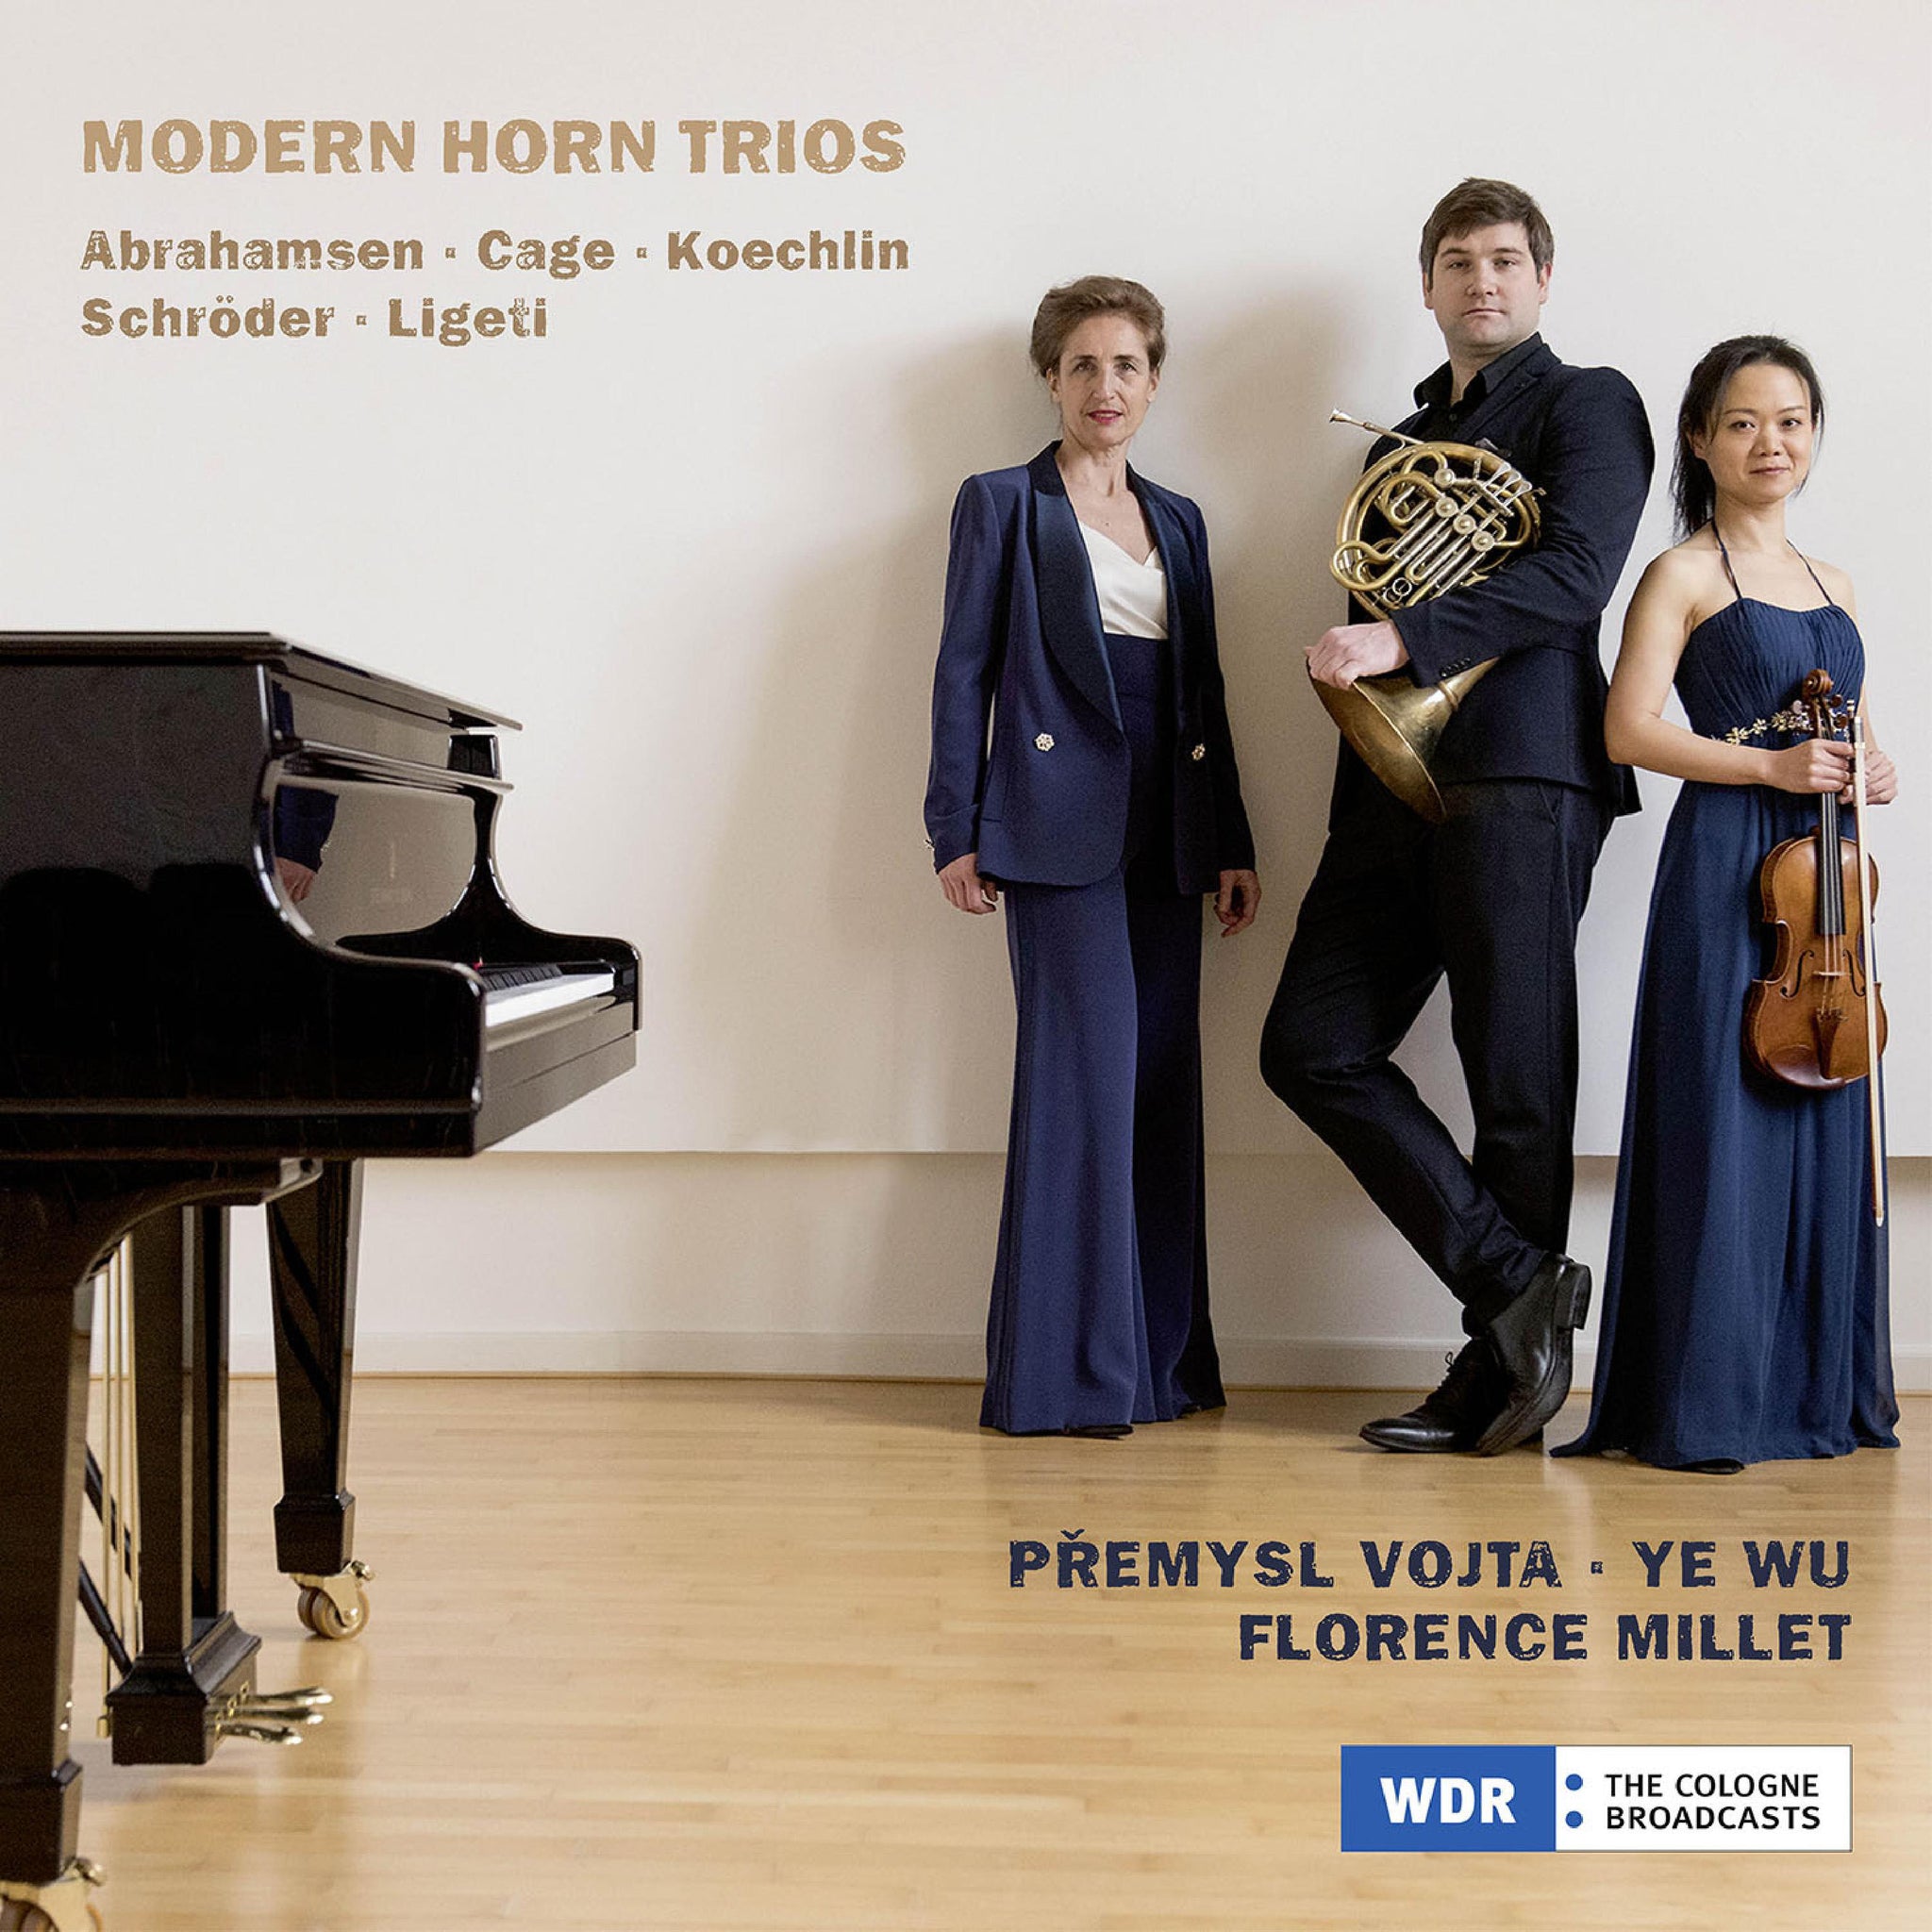 Abrahamsen, Cage, Koechlin, Ligeti & Schroeder: Modern Horn Trios